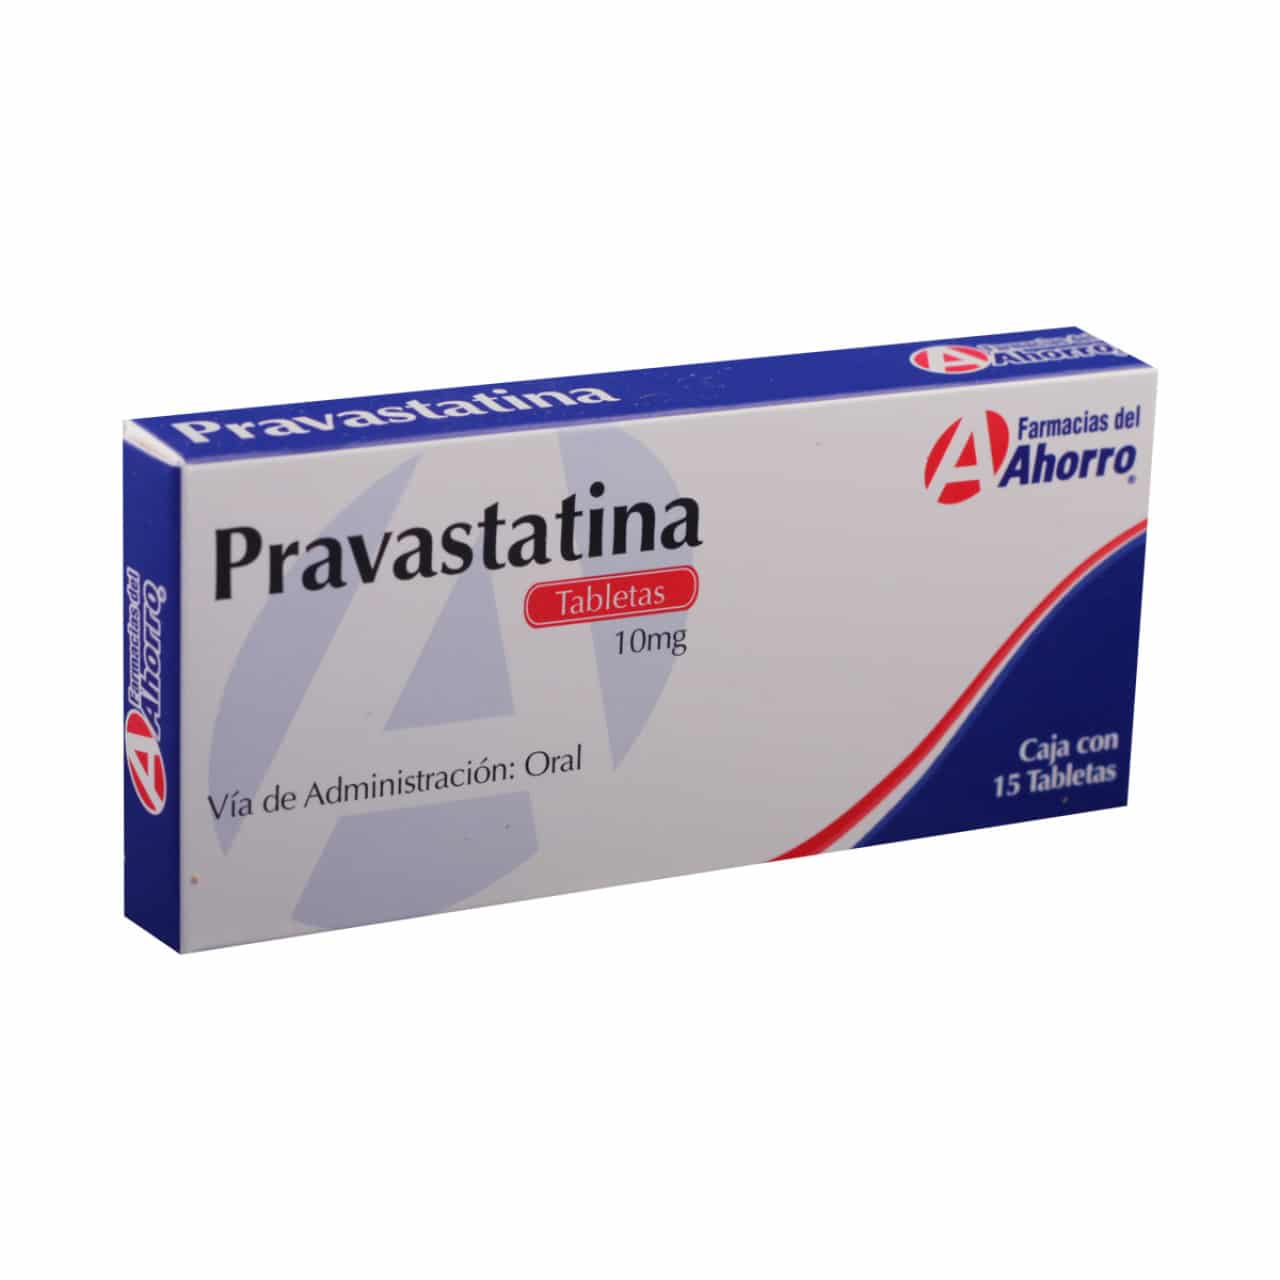 Atorvastatina-Atorvastatina vs pravastatina